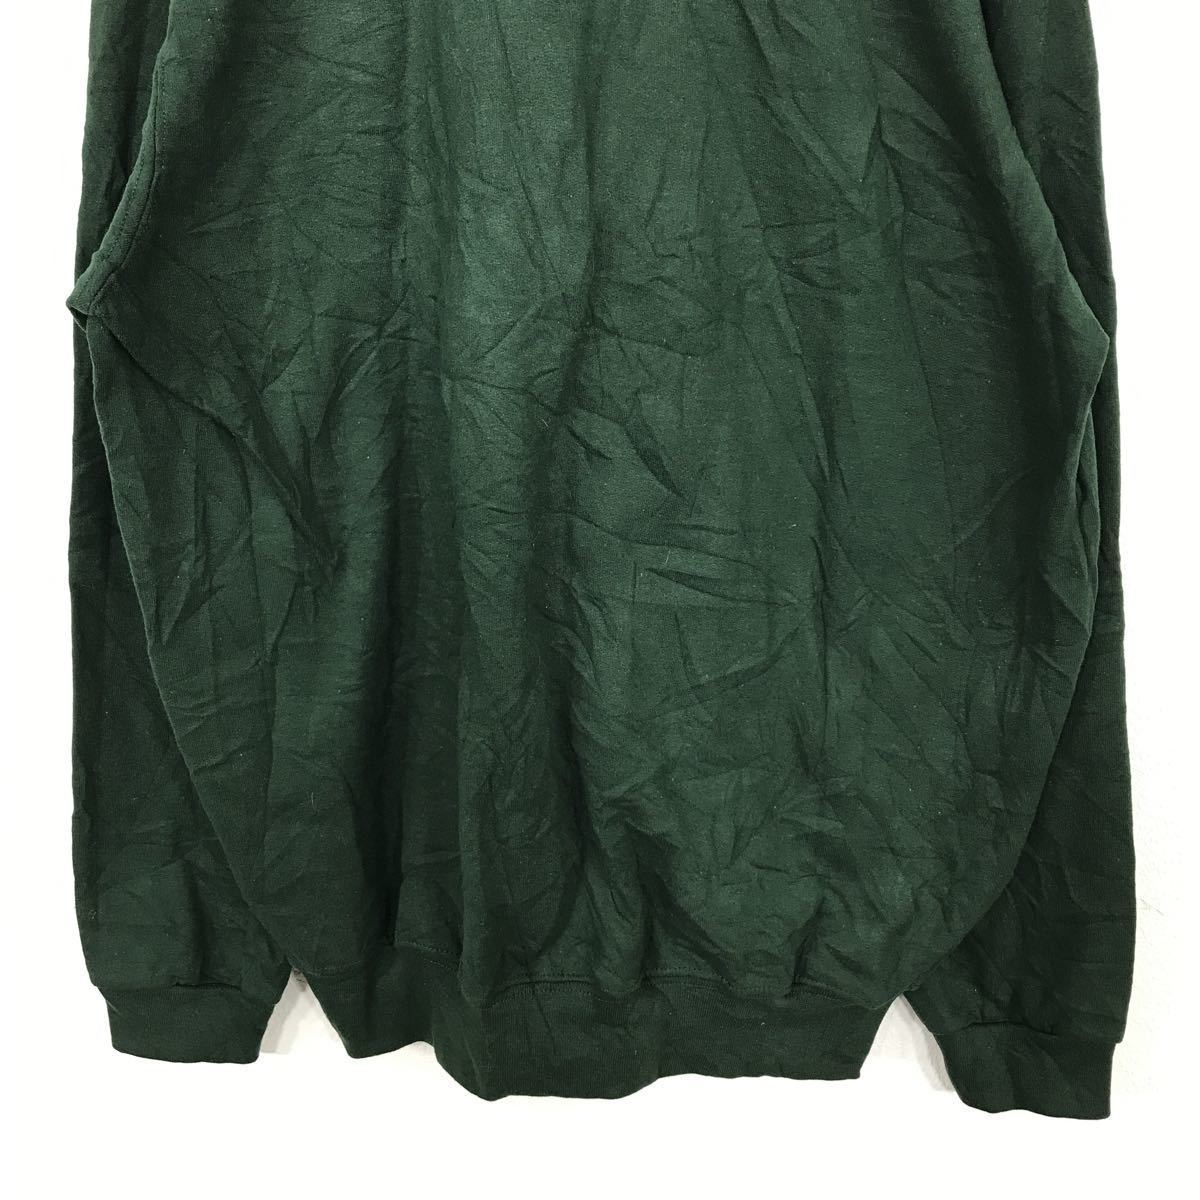 DayBreeze принт тренировочный женский L темно-зеленый футболка вышивка нашивка цветочный принт велюр обратная сторона ворсистый б/у одежда . America скупка t2111-3413